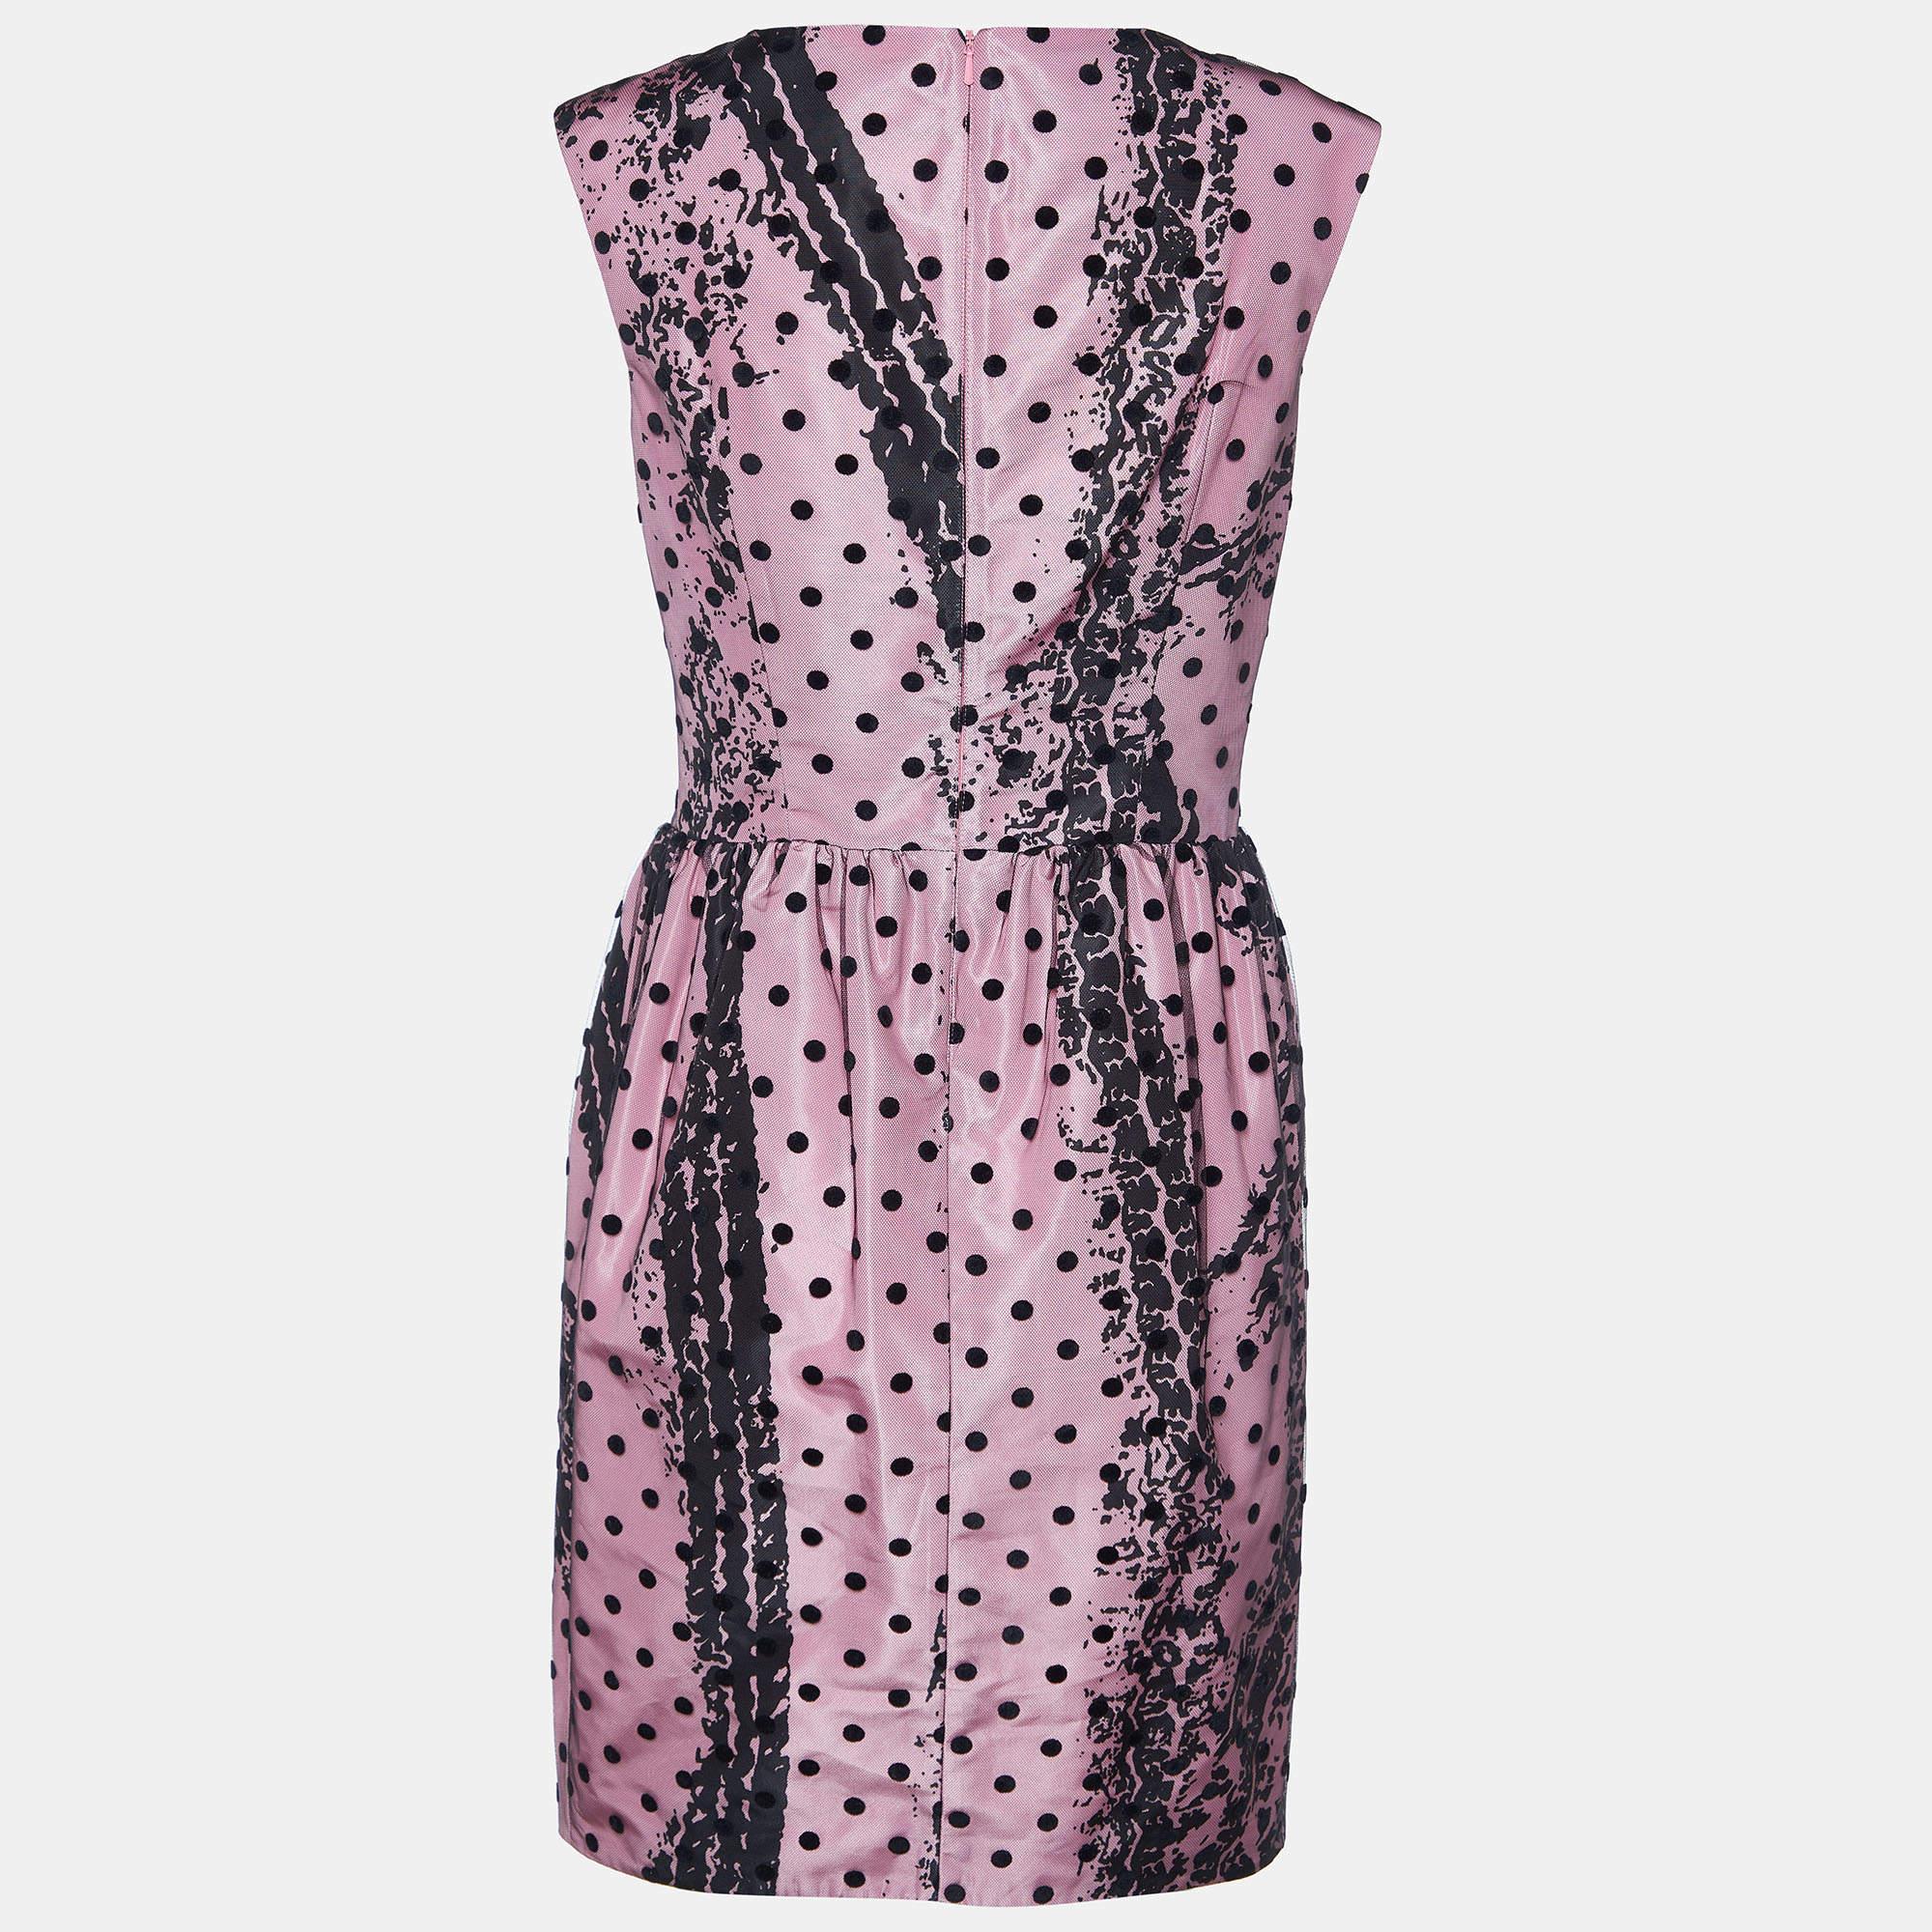 La robe Moschino Couture est un mélange saisissant d'élégance et d'espièglerie. Elle présente une silhouette fourreau en satin ornée d'imprimés complexes, rehaussés de tulle à pois sur toute la surface pour une touche fantaisiste, créant ainsi une